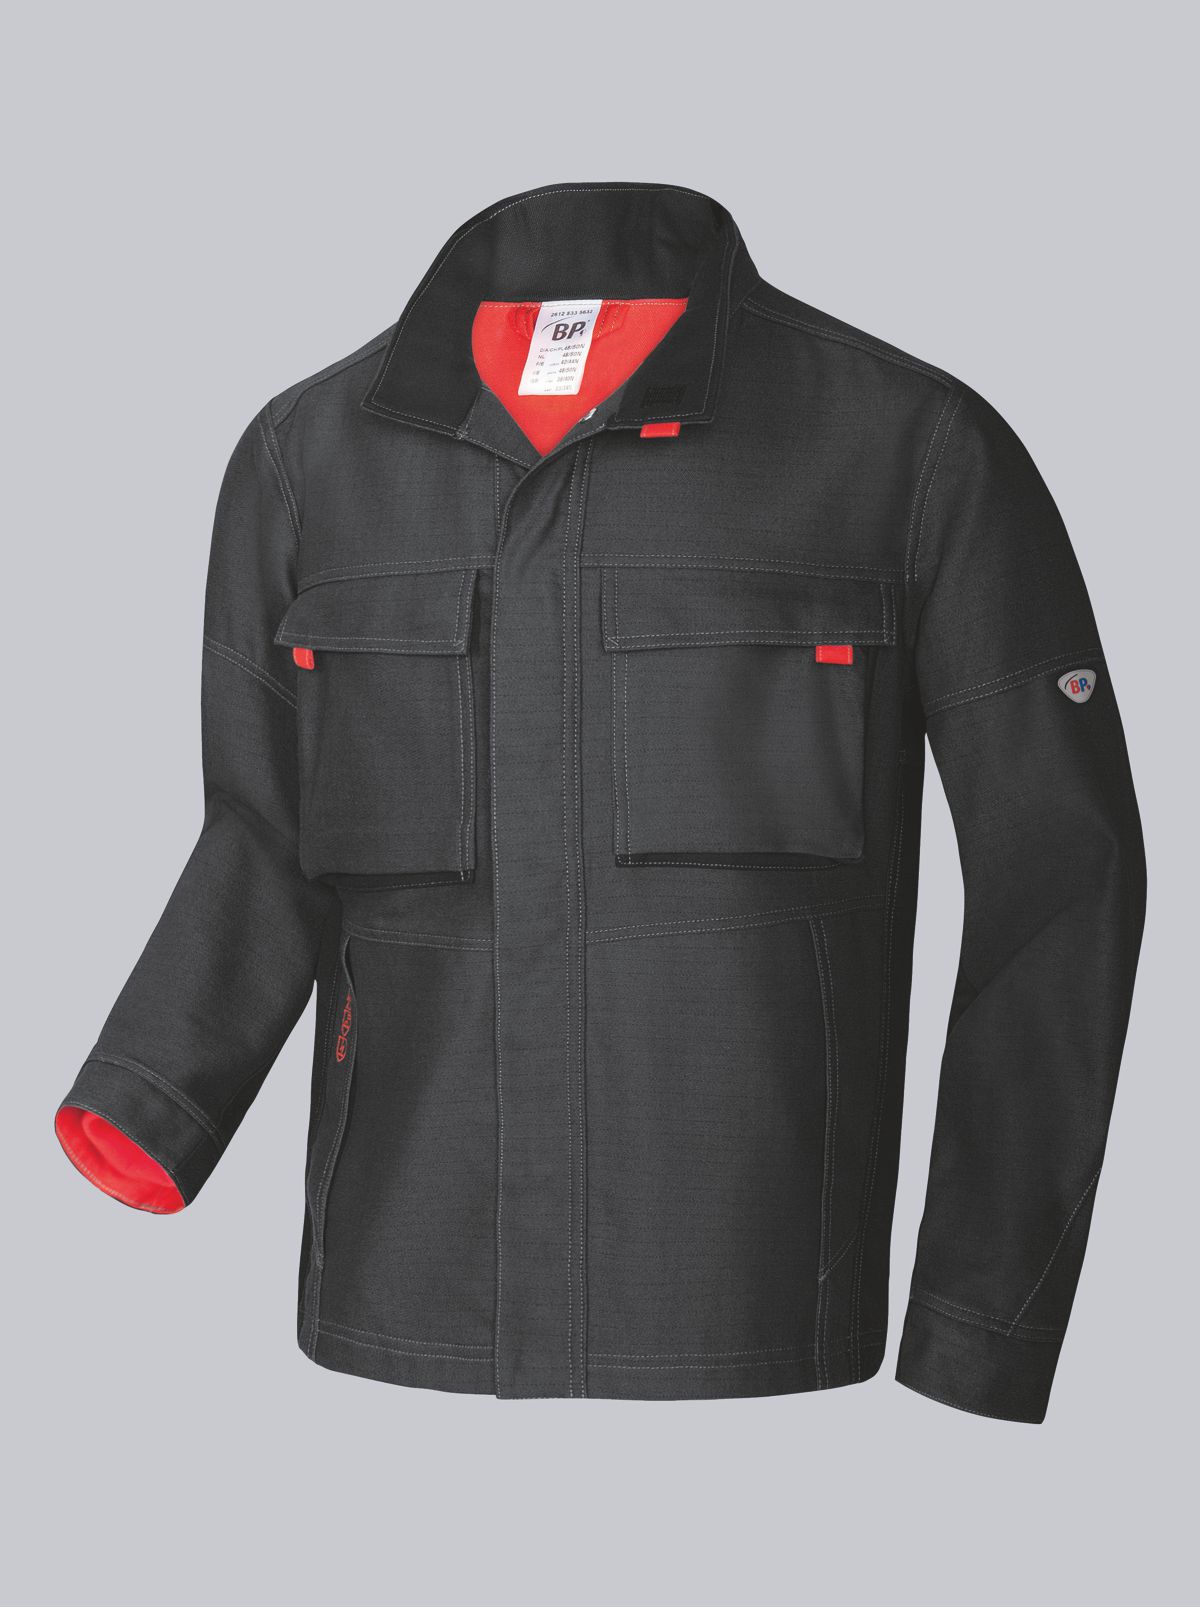 BP® Comfort welder protection jacket with APC1